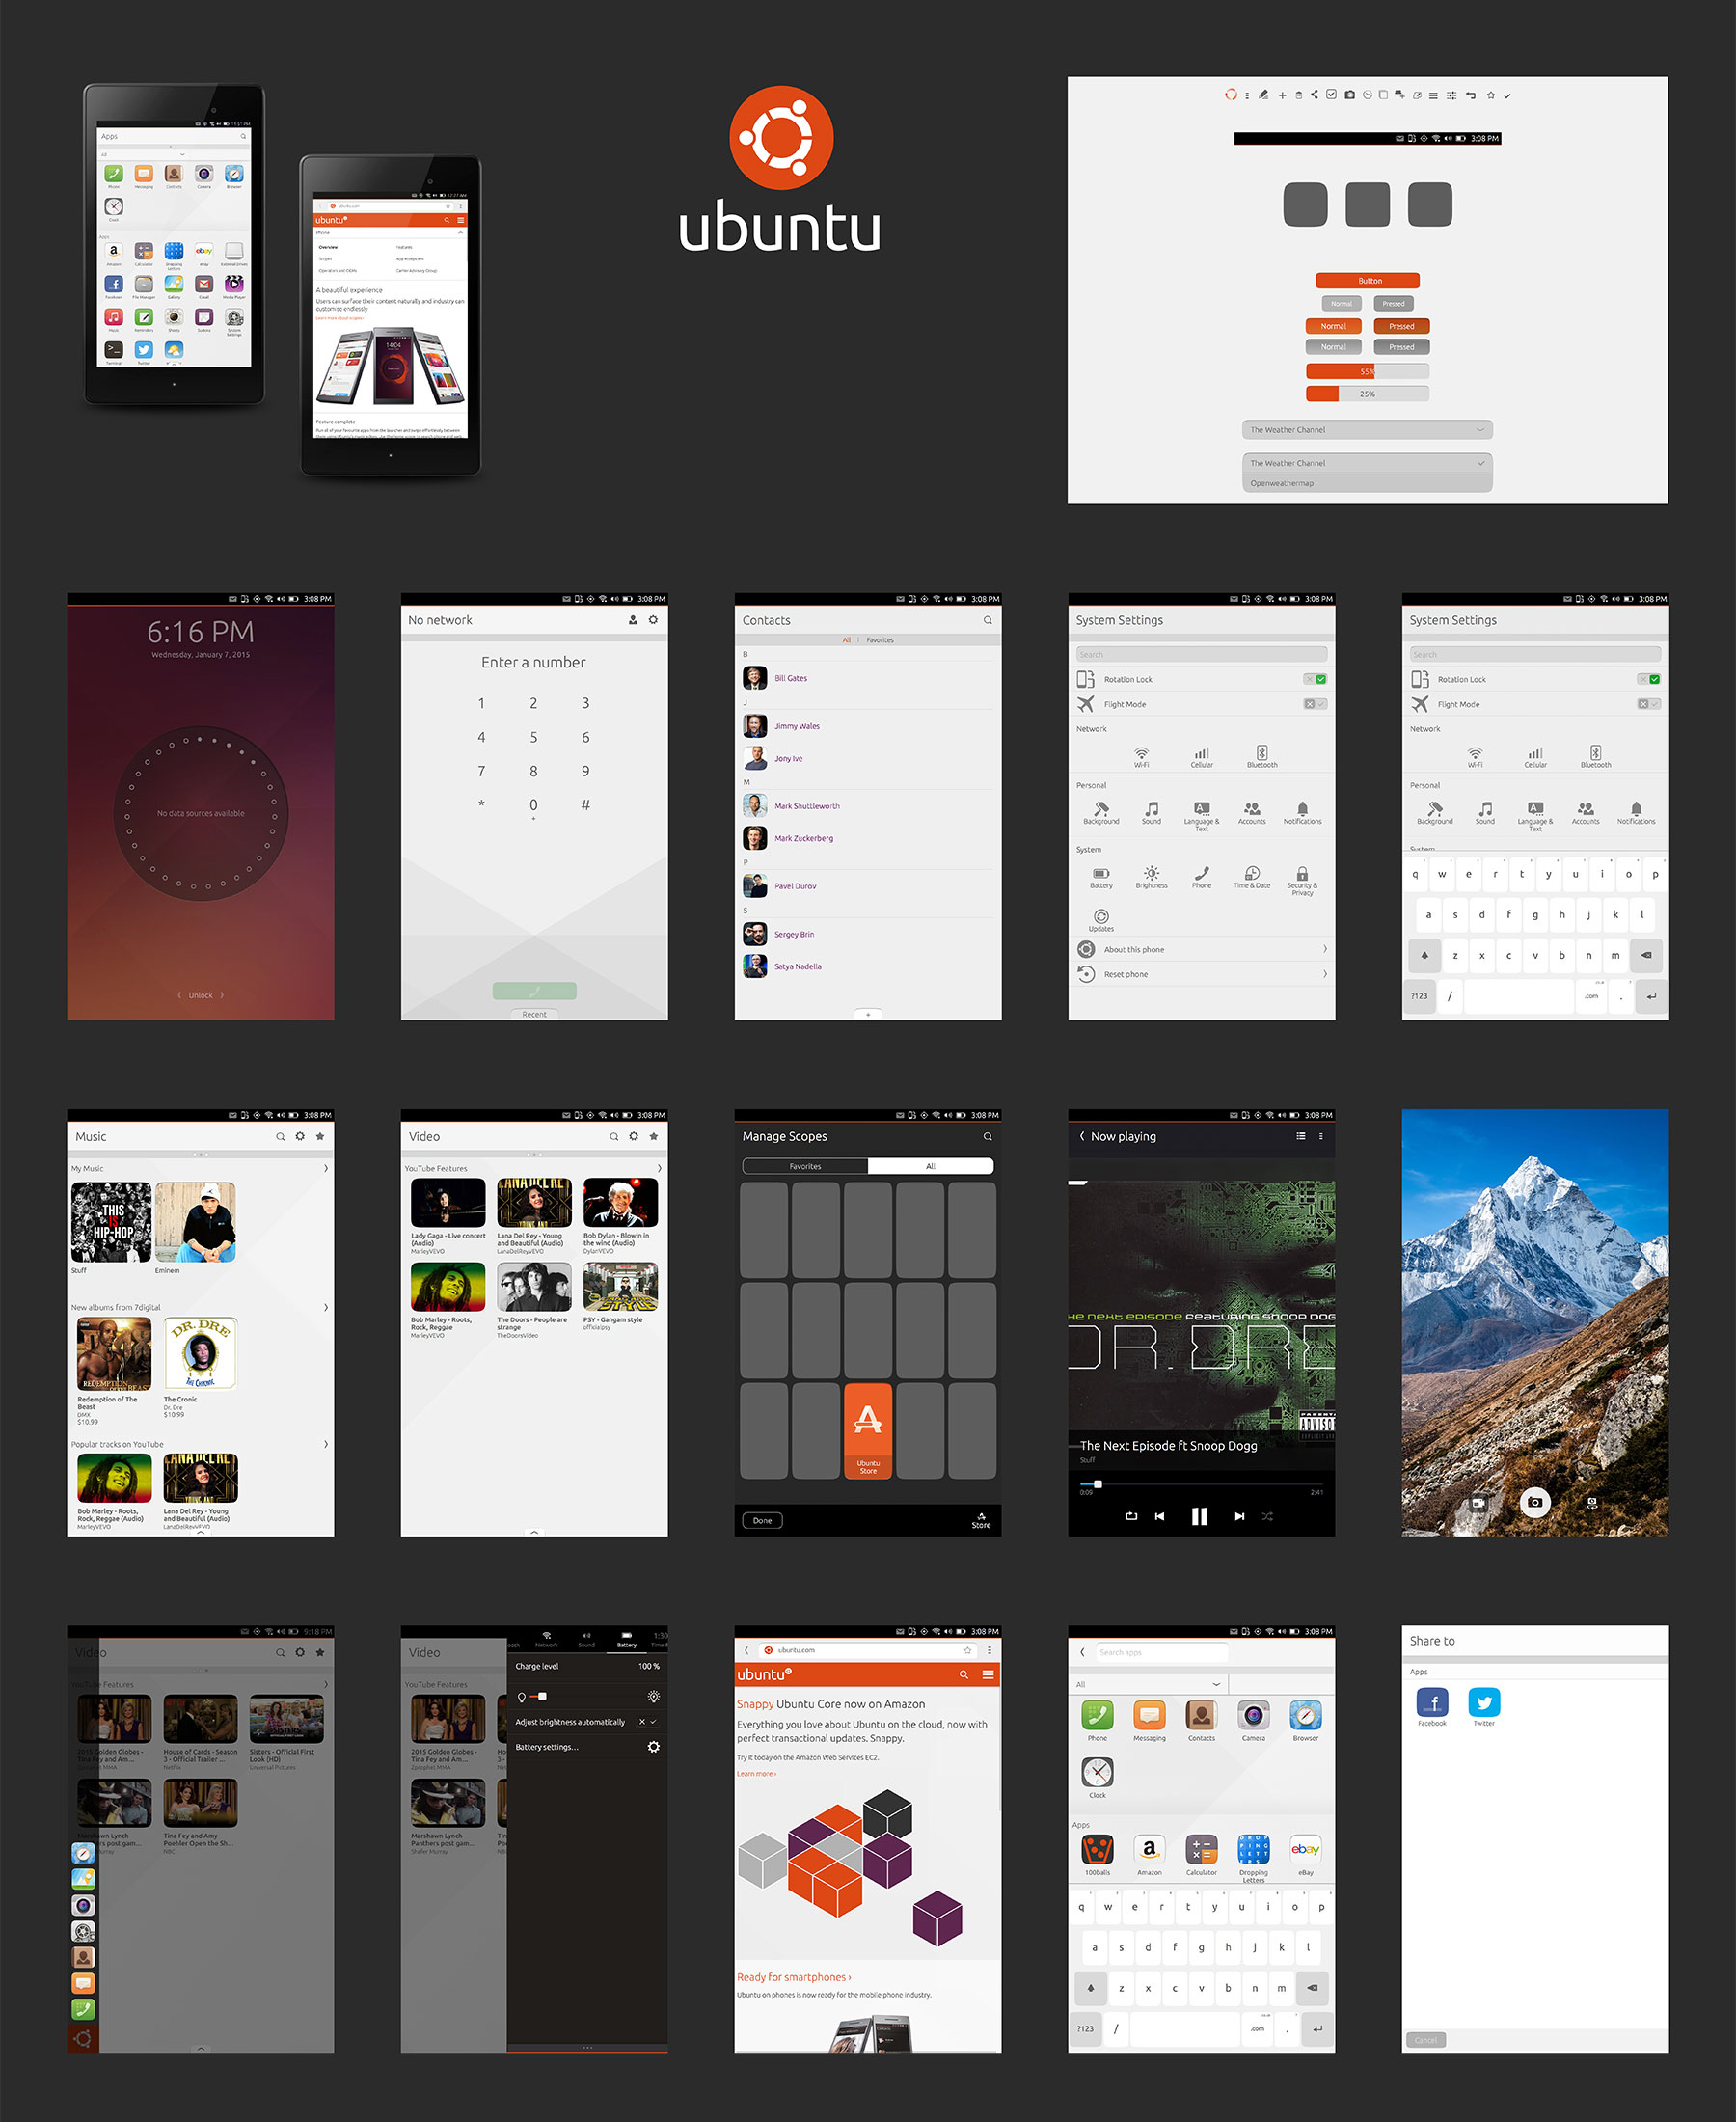 ubuntu-touch-gui@2x.jpg